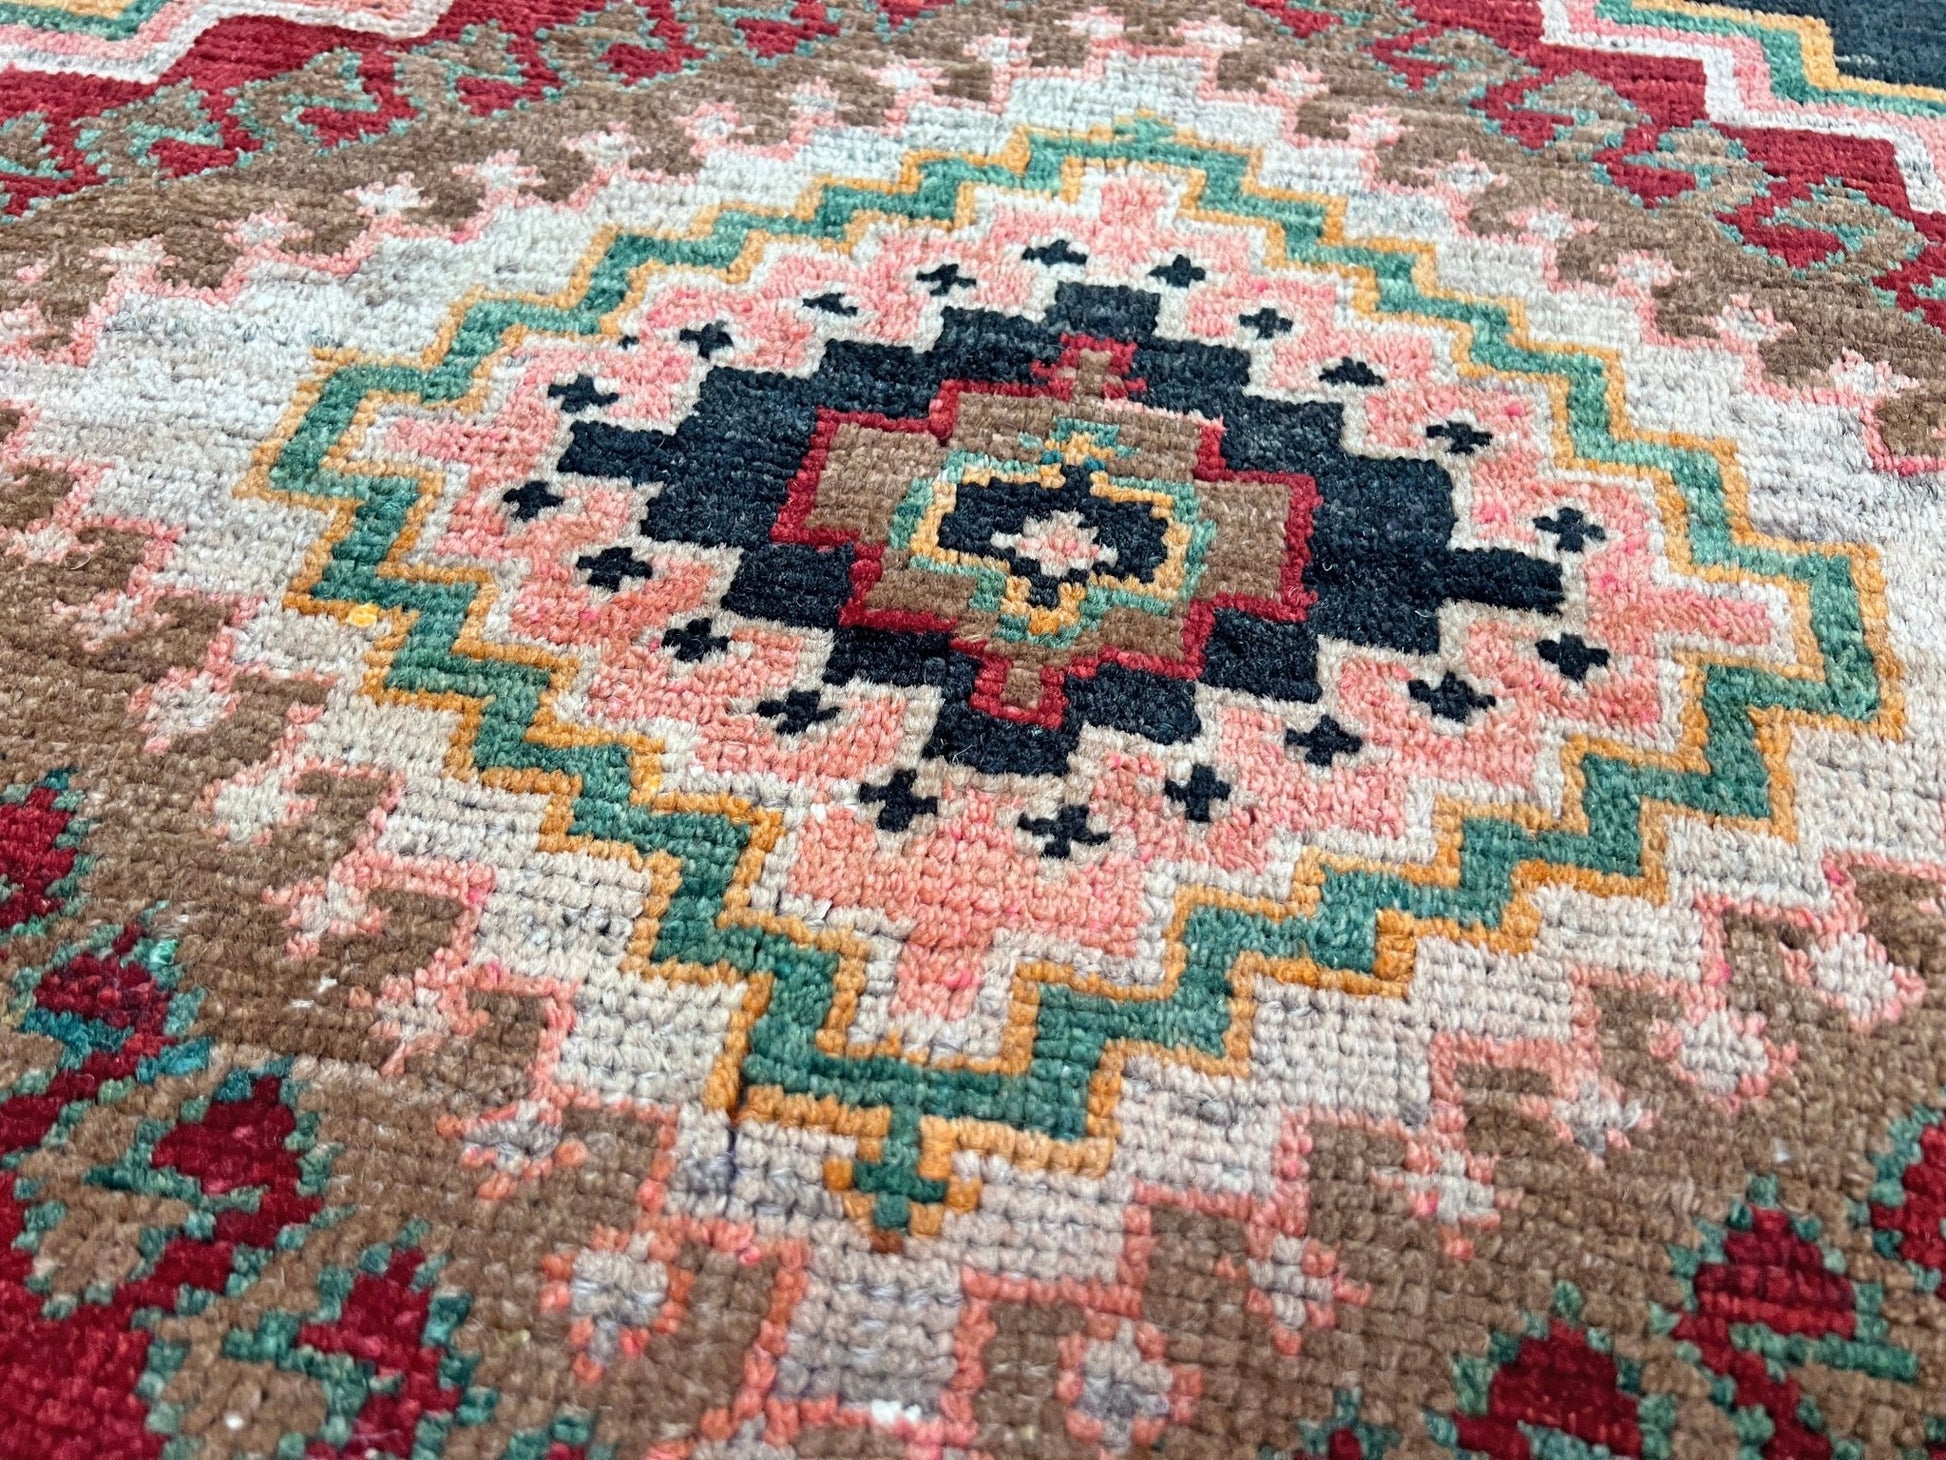 Kuba caucasian handmade wool vintage wide runner rug. Buy oriental rug shop san francisco bay area. Buy rug online free